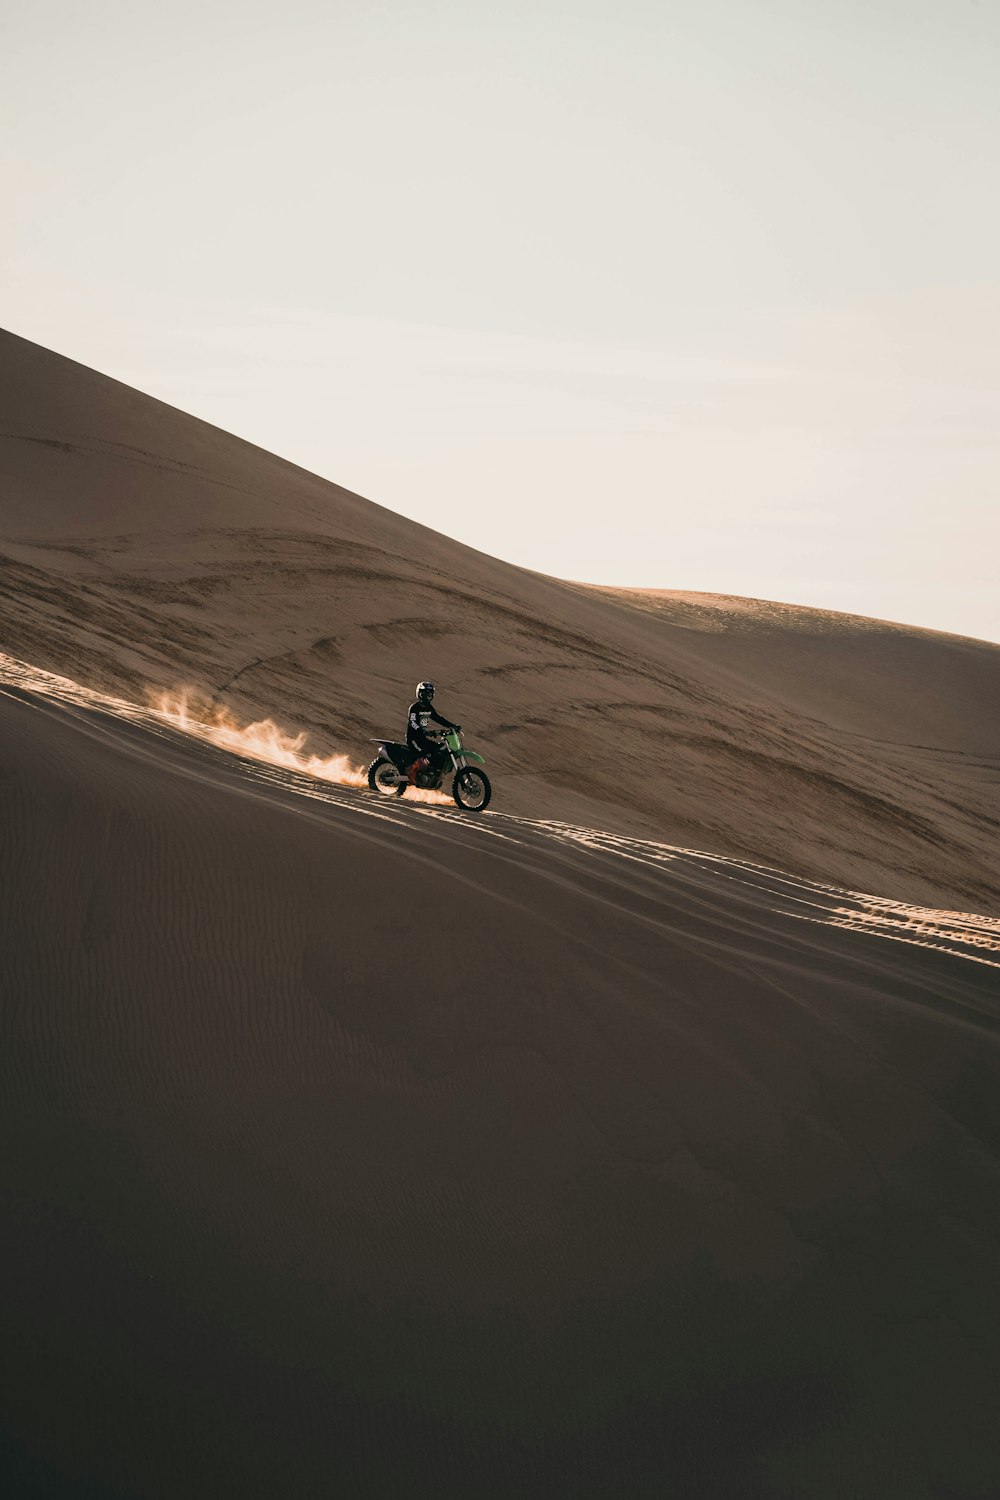 homme conduisant une moto sur du sable brun